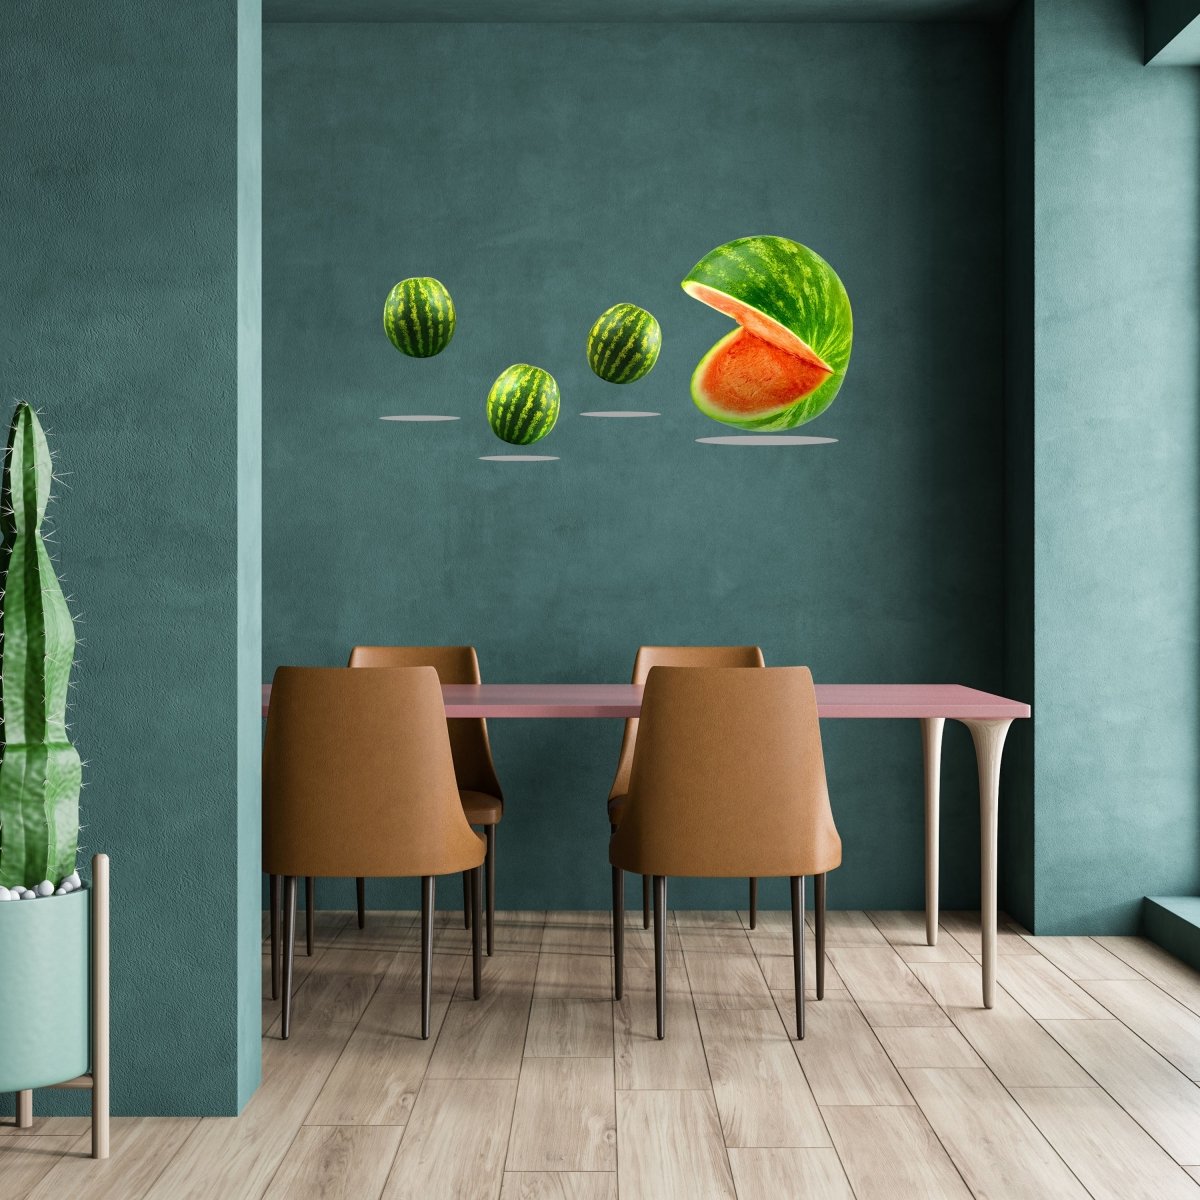 Wandsticker Melonen Pacman, Wasser-melone, Obst WS00000210 - Bild 2